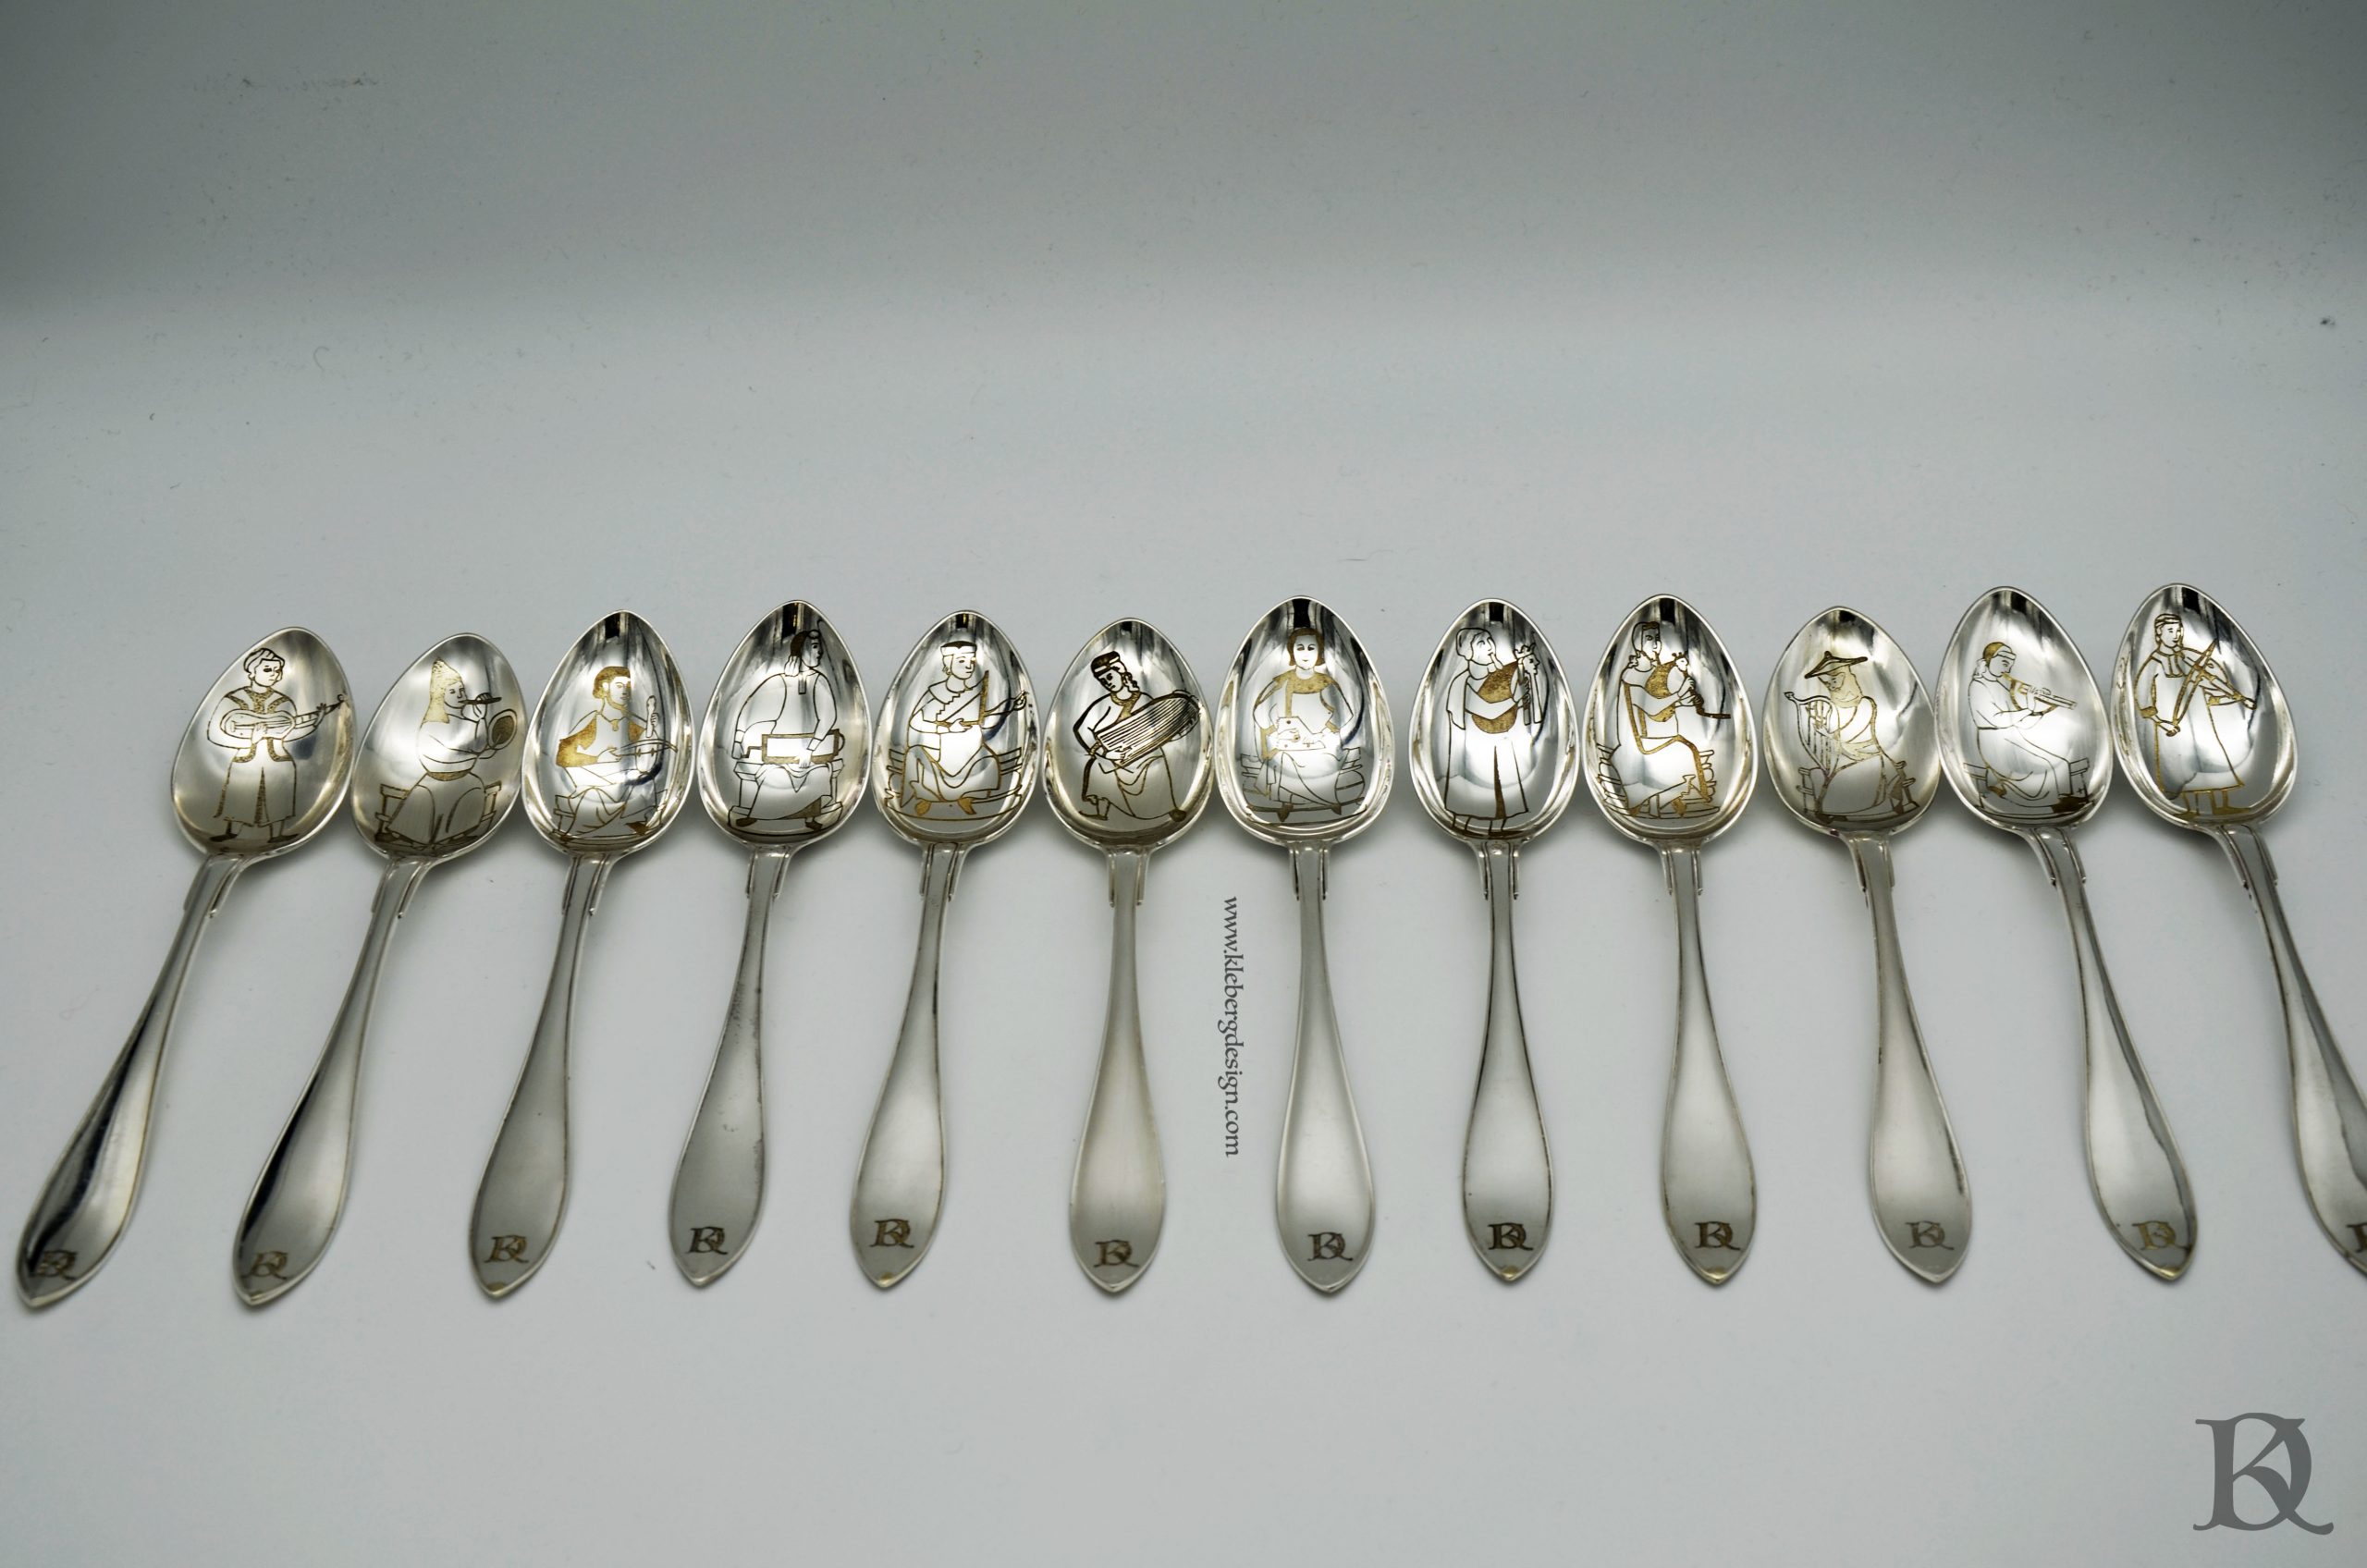 12 spoon designs - Cantigas de Santa Maria